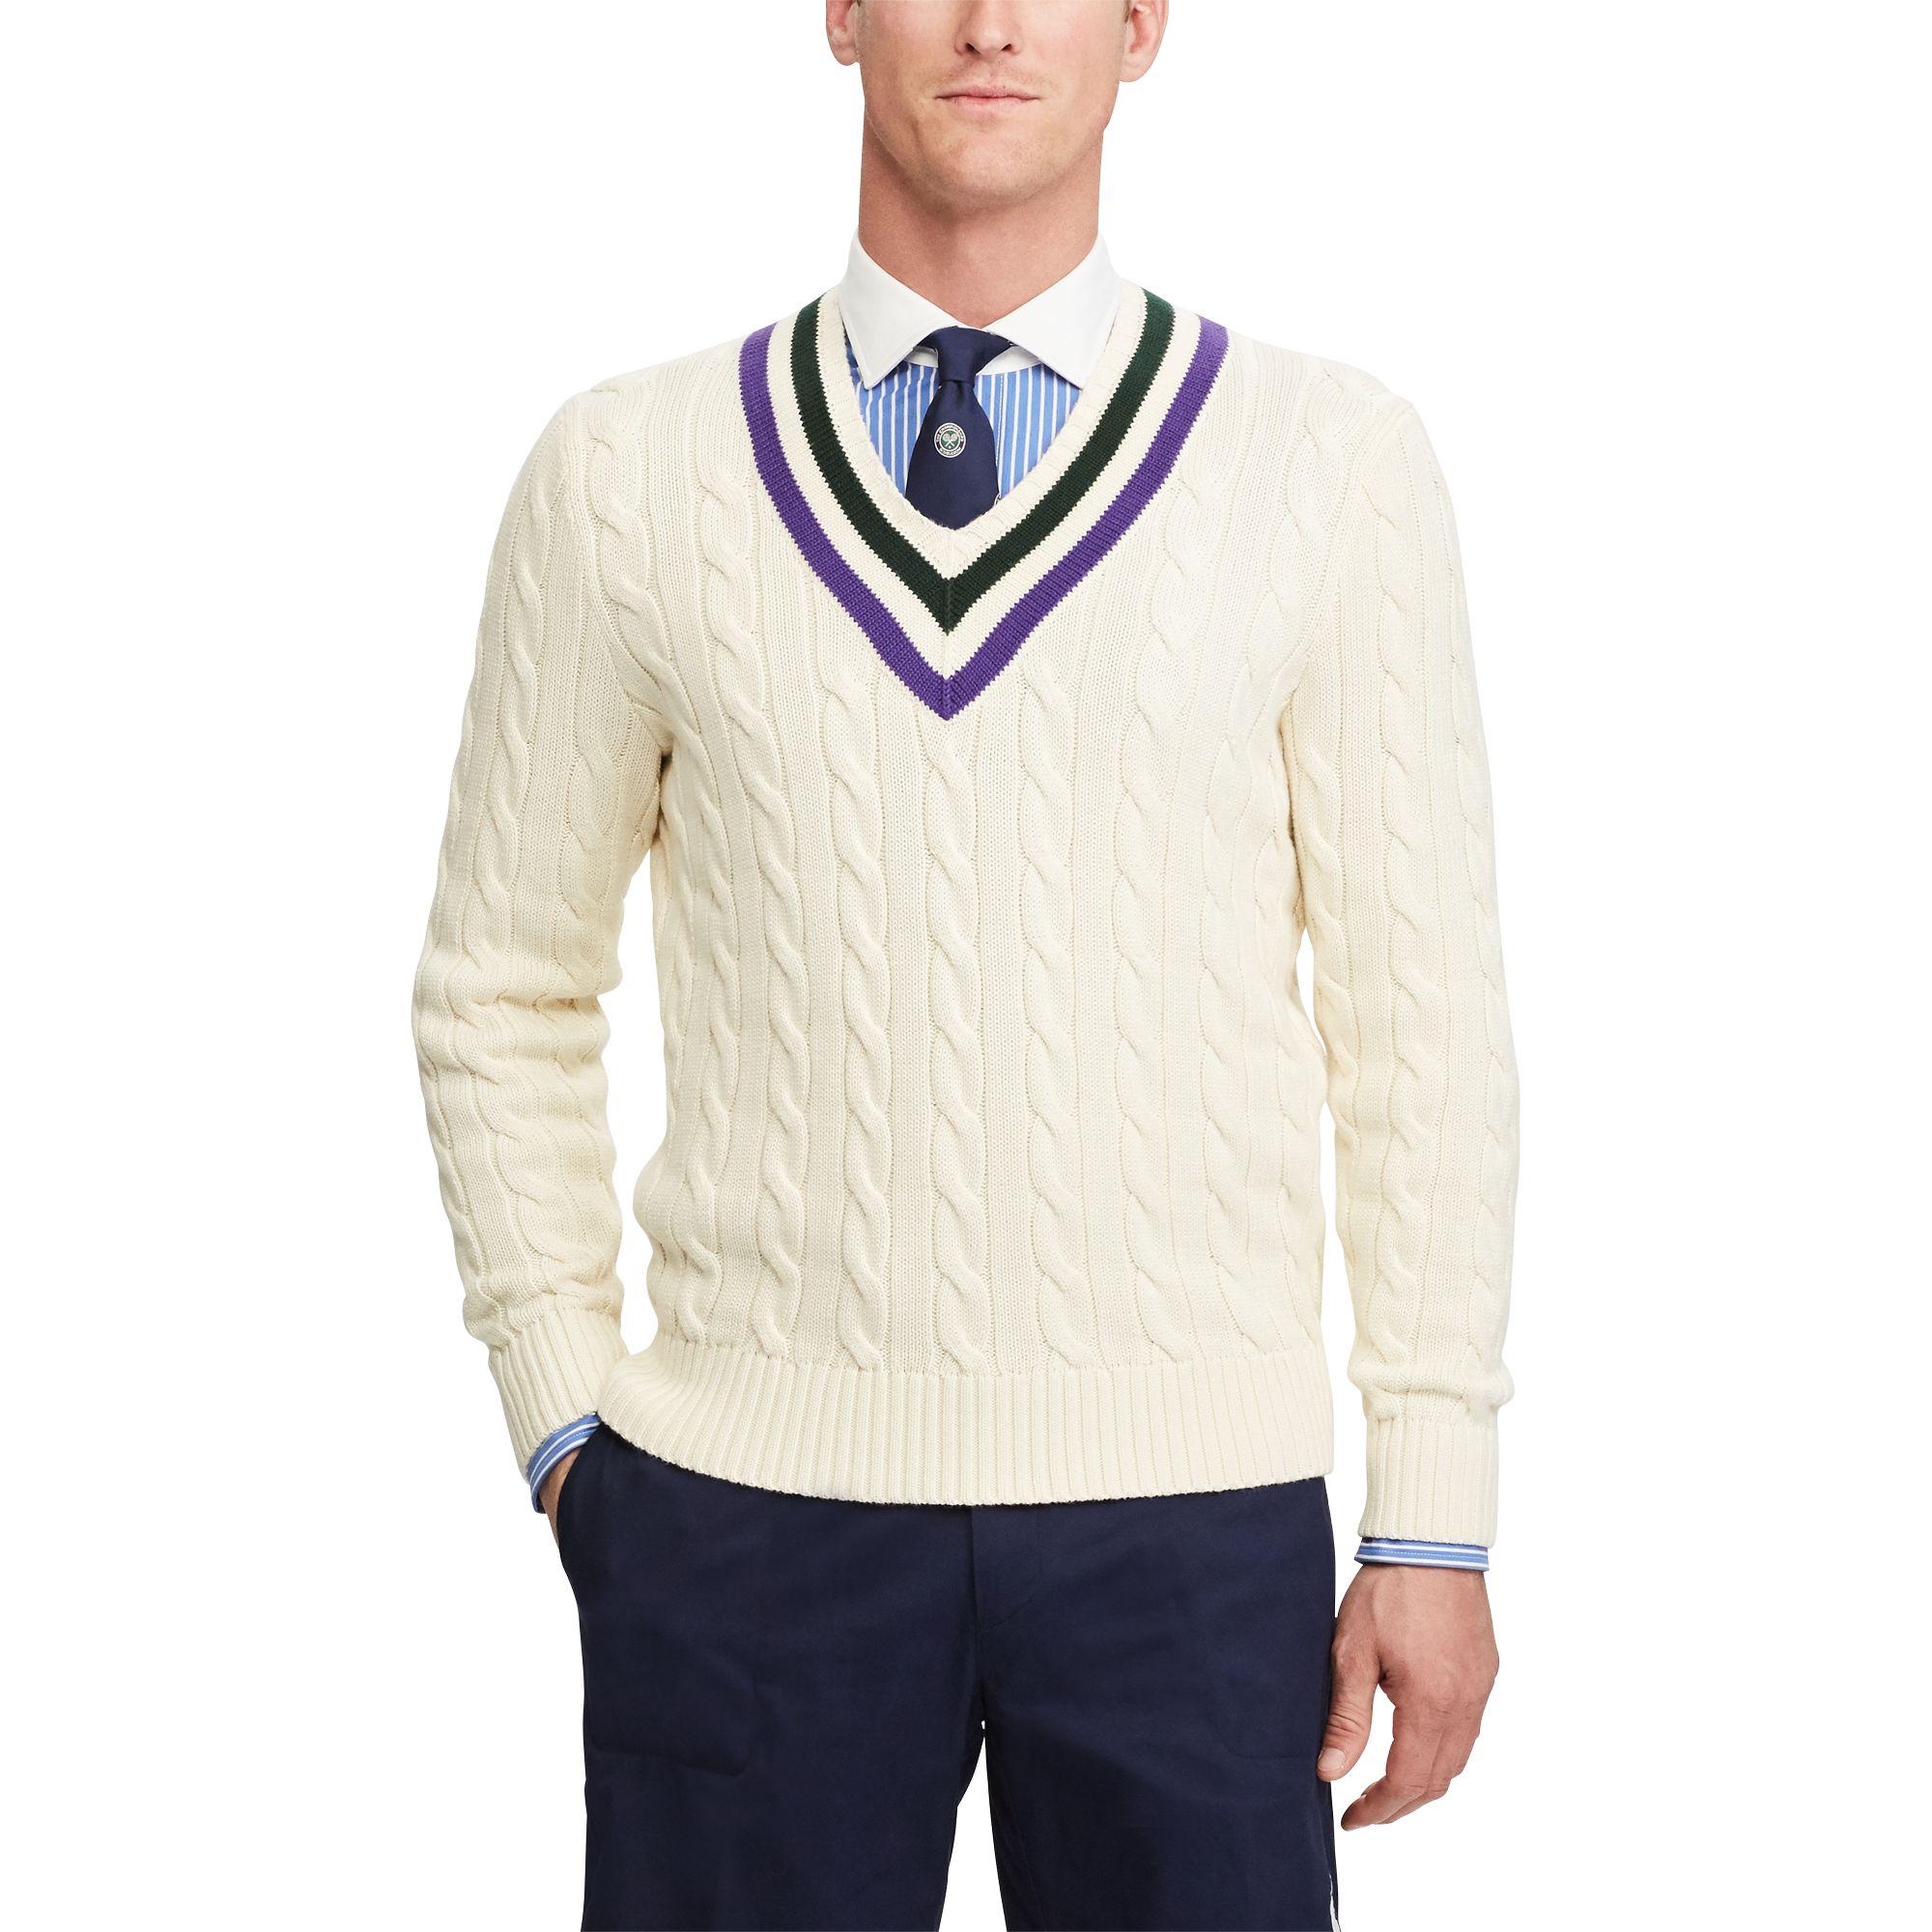 Ralph Lauren Wimbledon Sweater Flash Sales, 50% OFF |  www.aboutfaceandbody.net